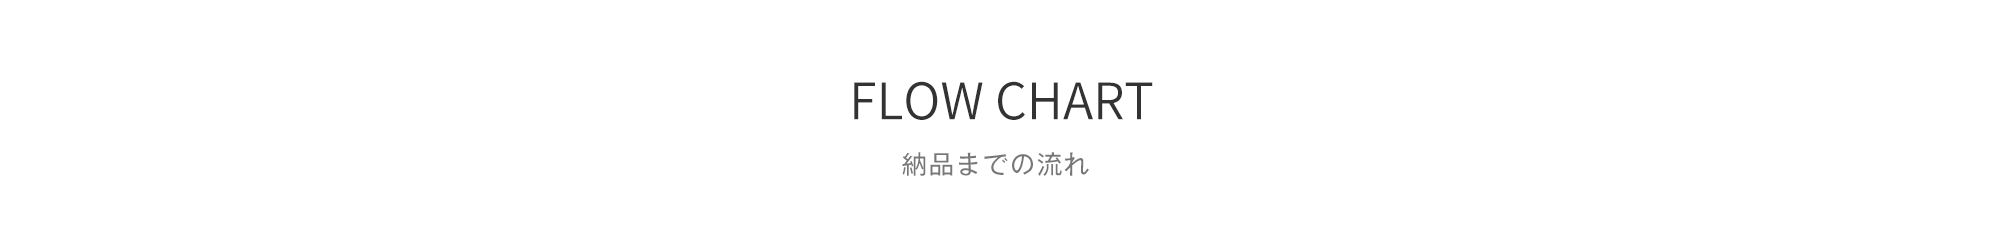 FLOW CHART / 納品までの流れ